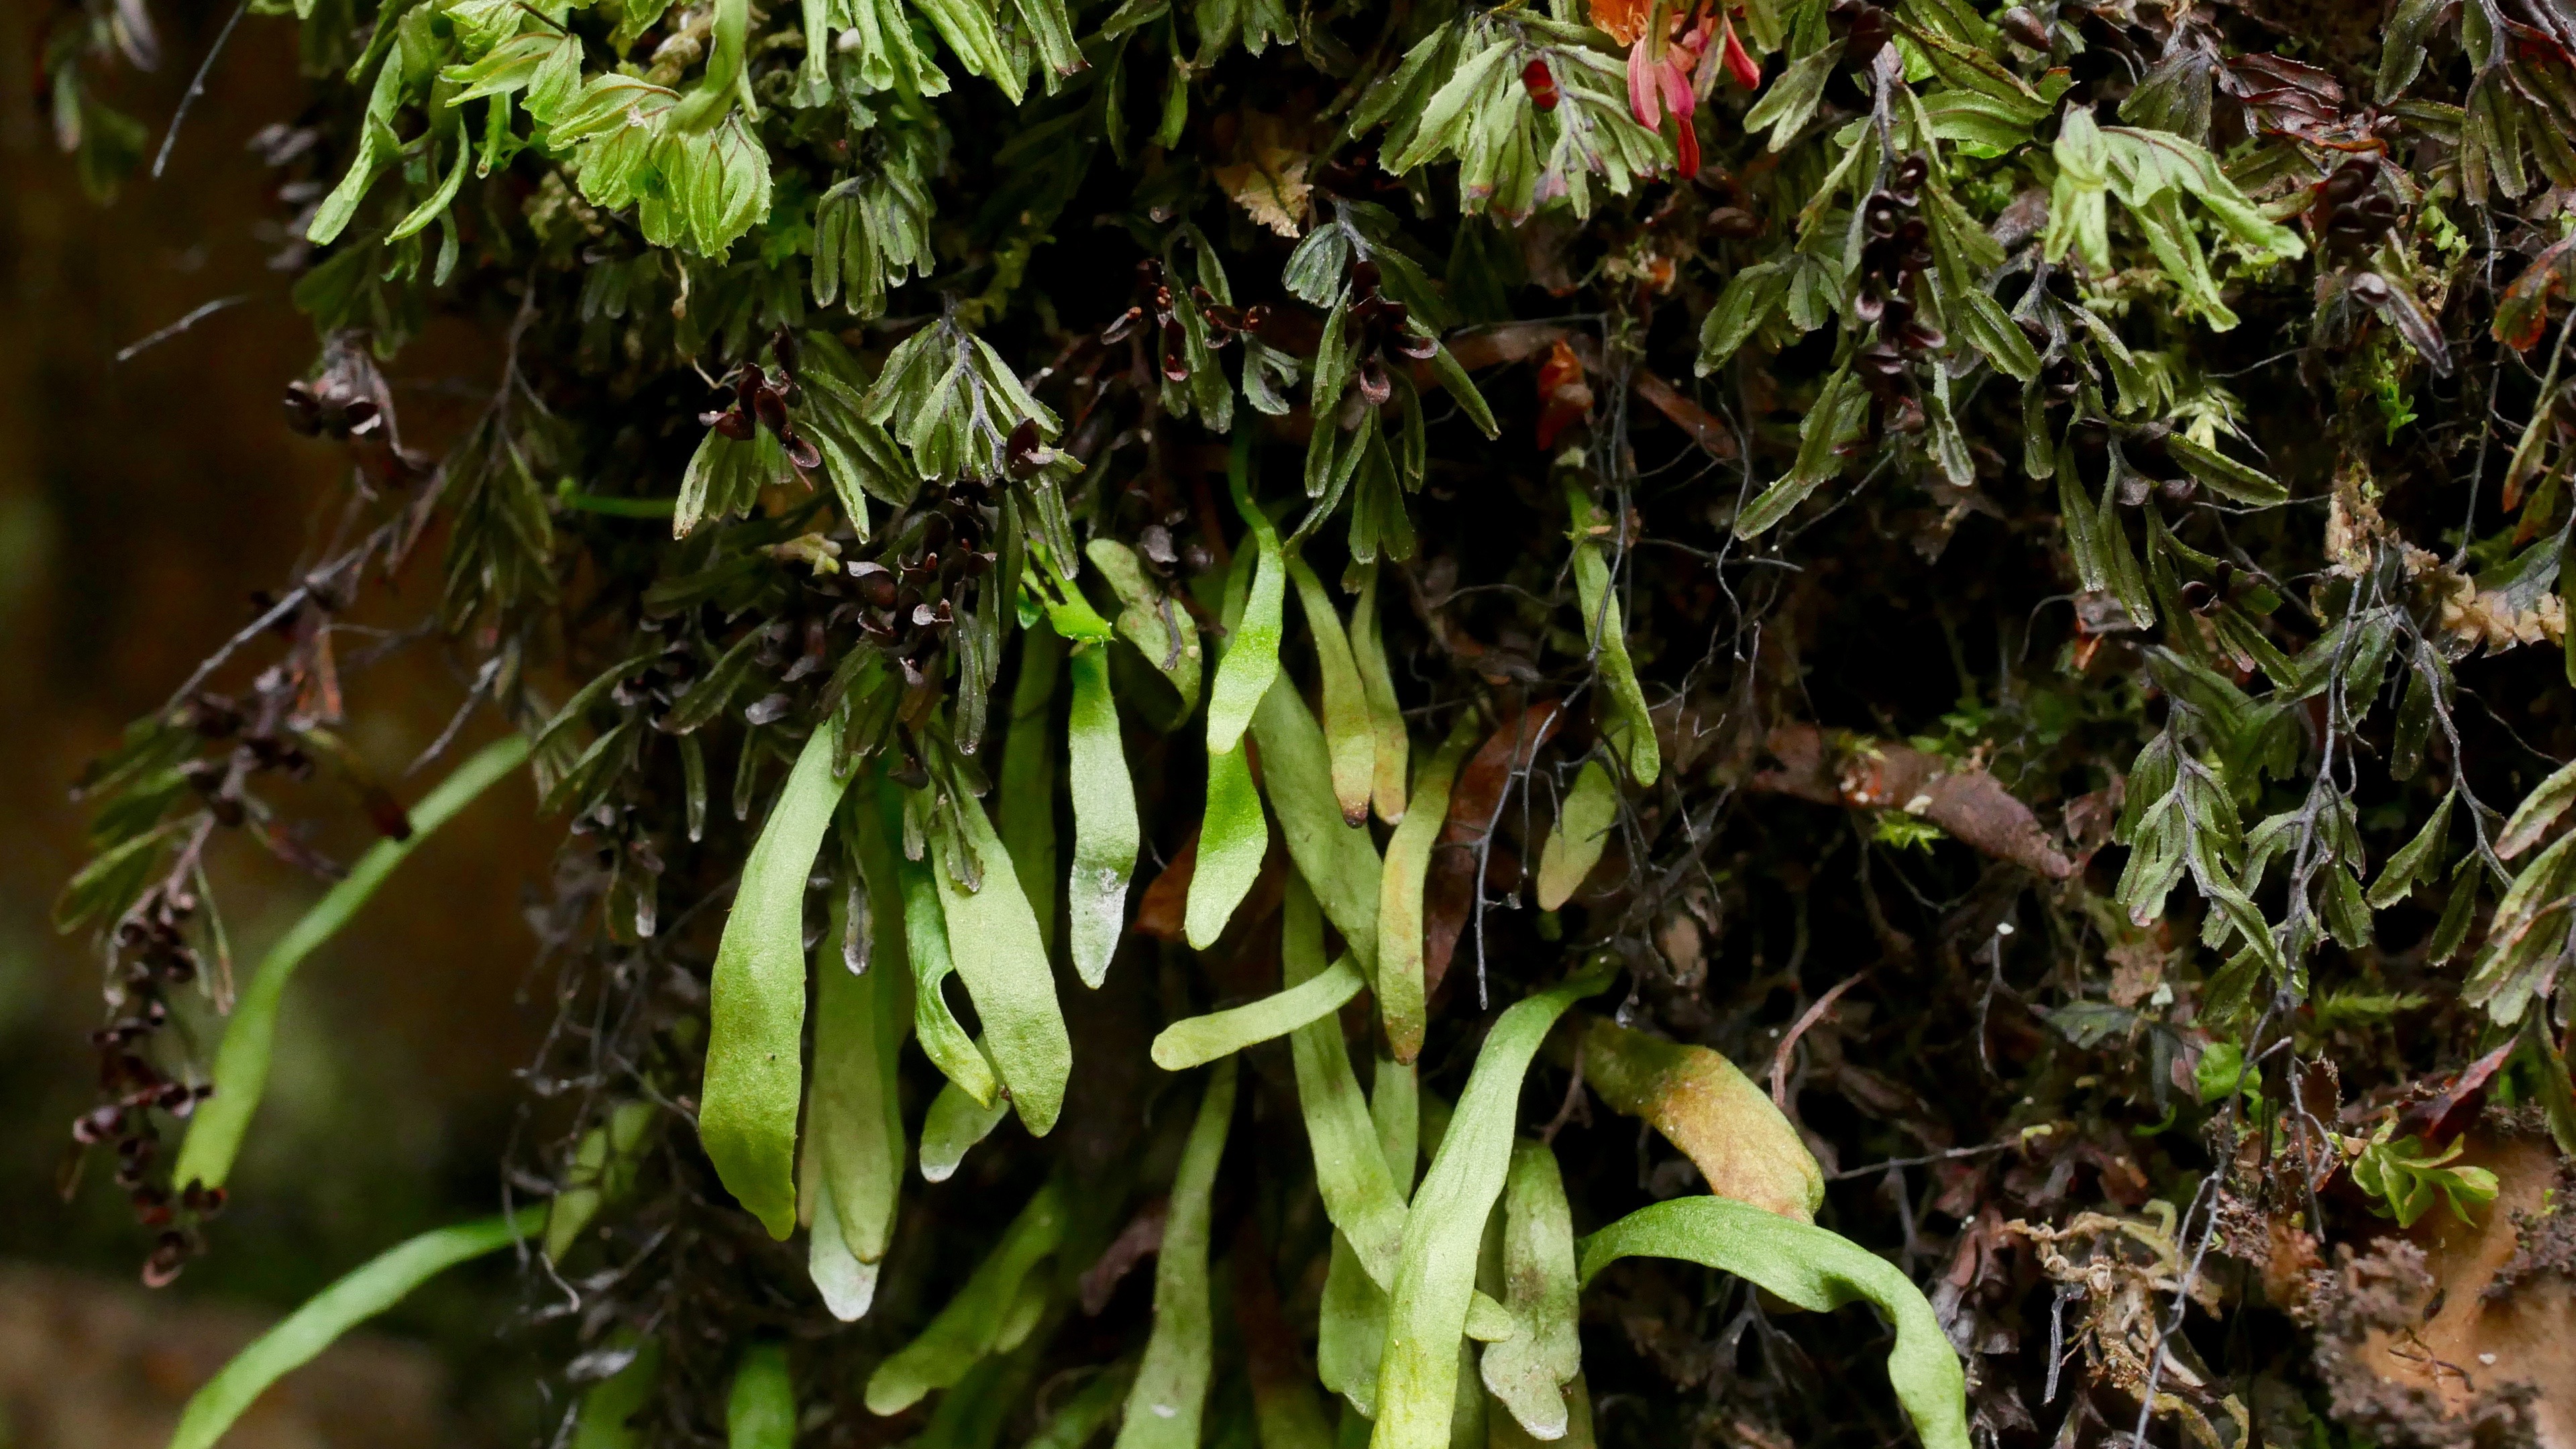 Abb. 4 Notogrammitis angustifolia, eine kleine südhemisphärische Farnart, die in feuchter Umgebung an Felsen und in Felsspalten, aber auch auf Baumstämmen zu finden ist.